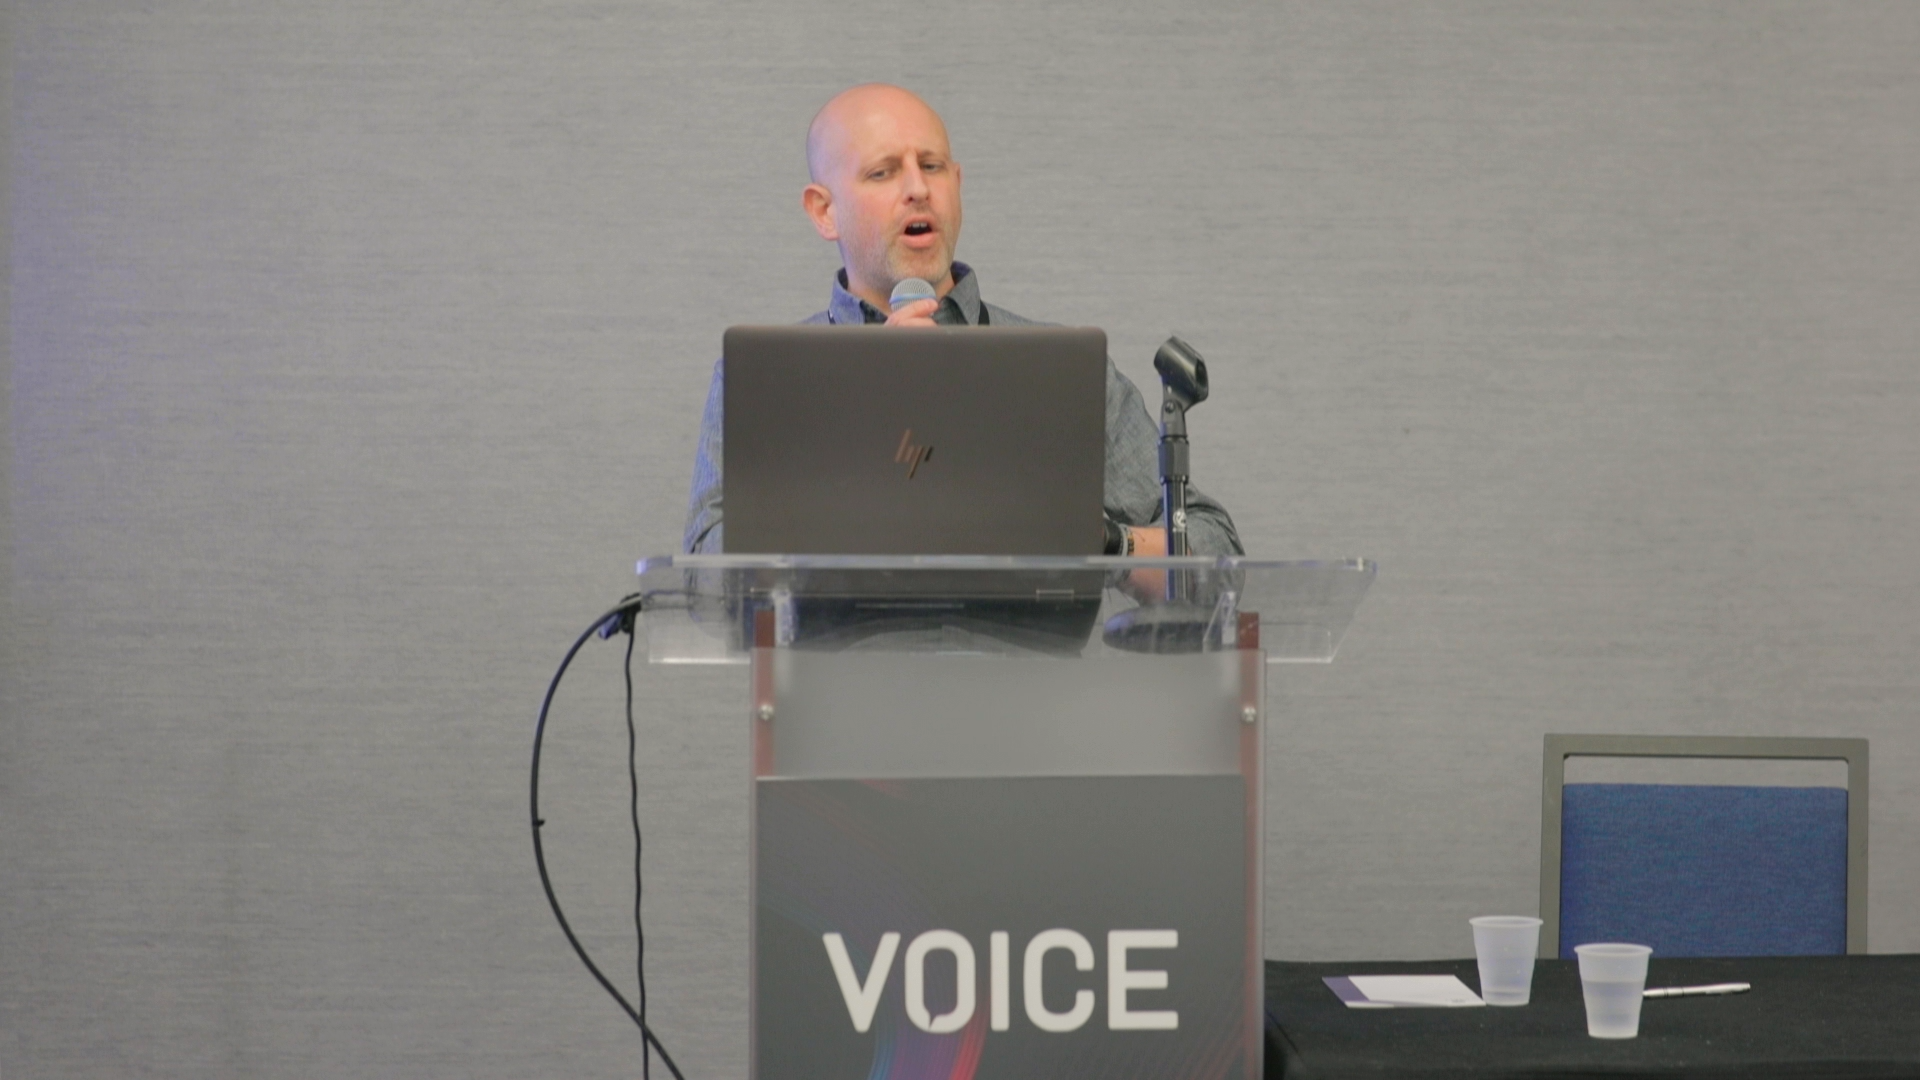 VOICE22 | OVON Healthcare Track: Voice Interfaces Have a Race Problem | Freddie Feldman